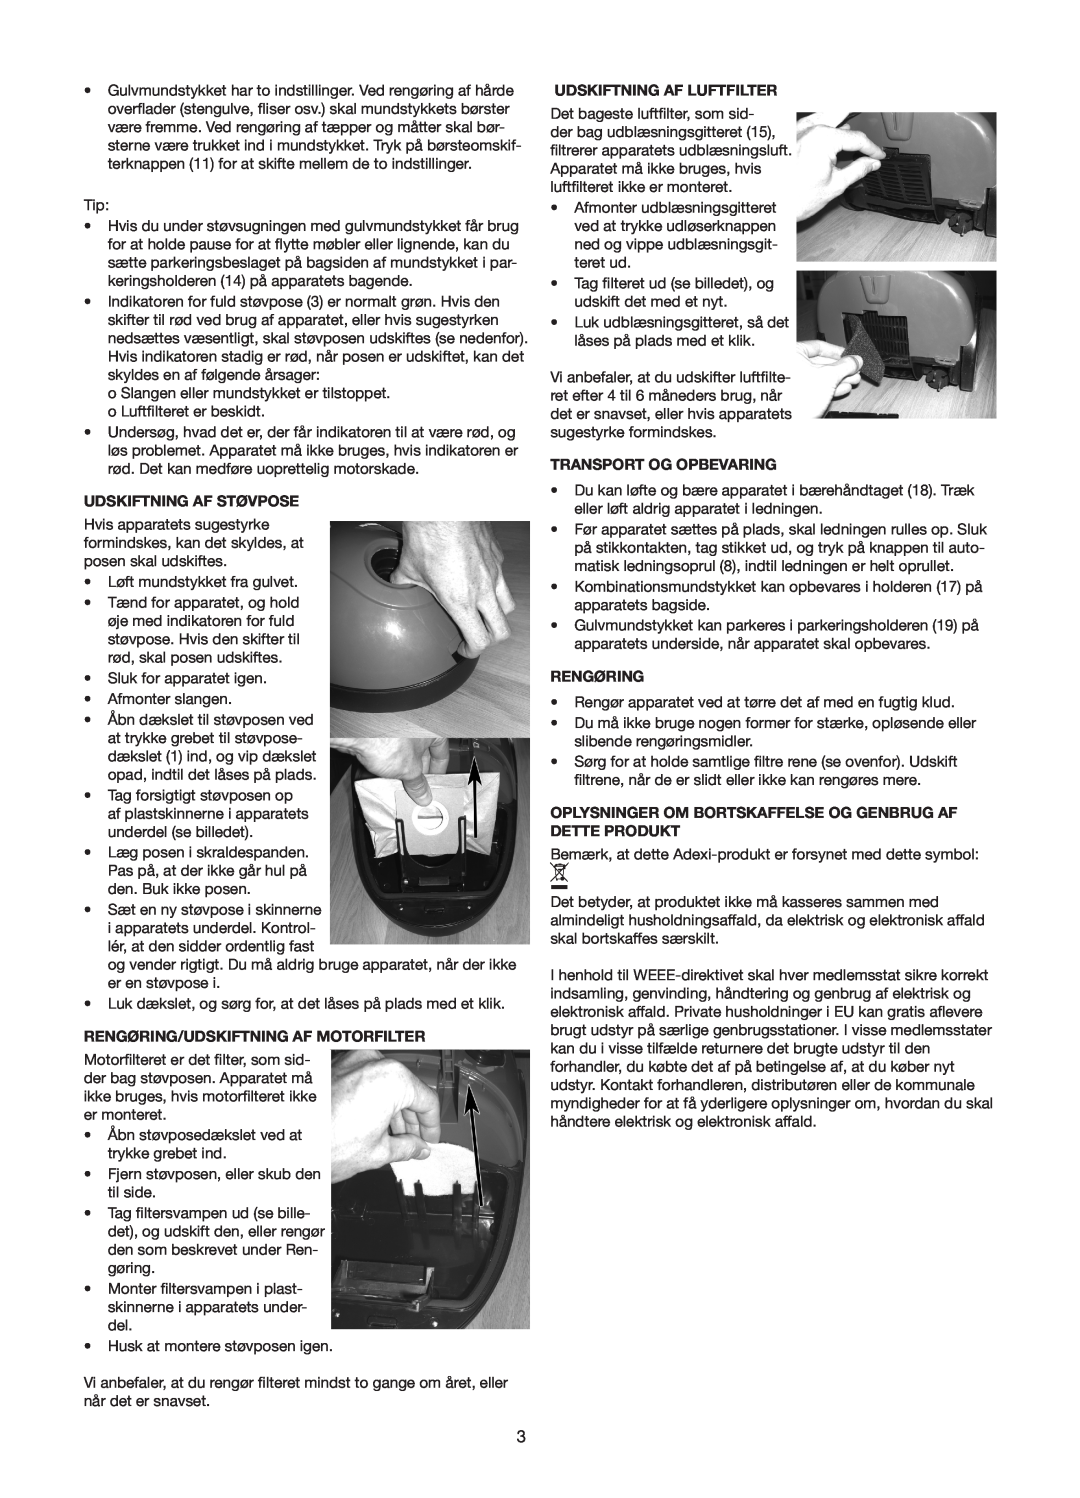 Melissa 640-131, 640-116 manual Udskiftning Af Støvpose, Rengøring/Udskiftning Af Motorfilter, Udskiftning Af Luftfilter 